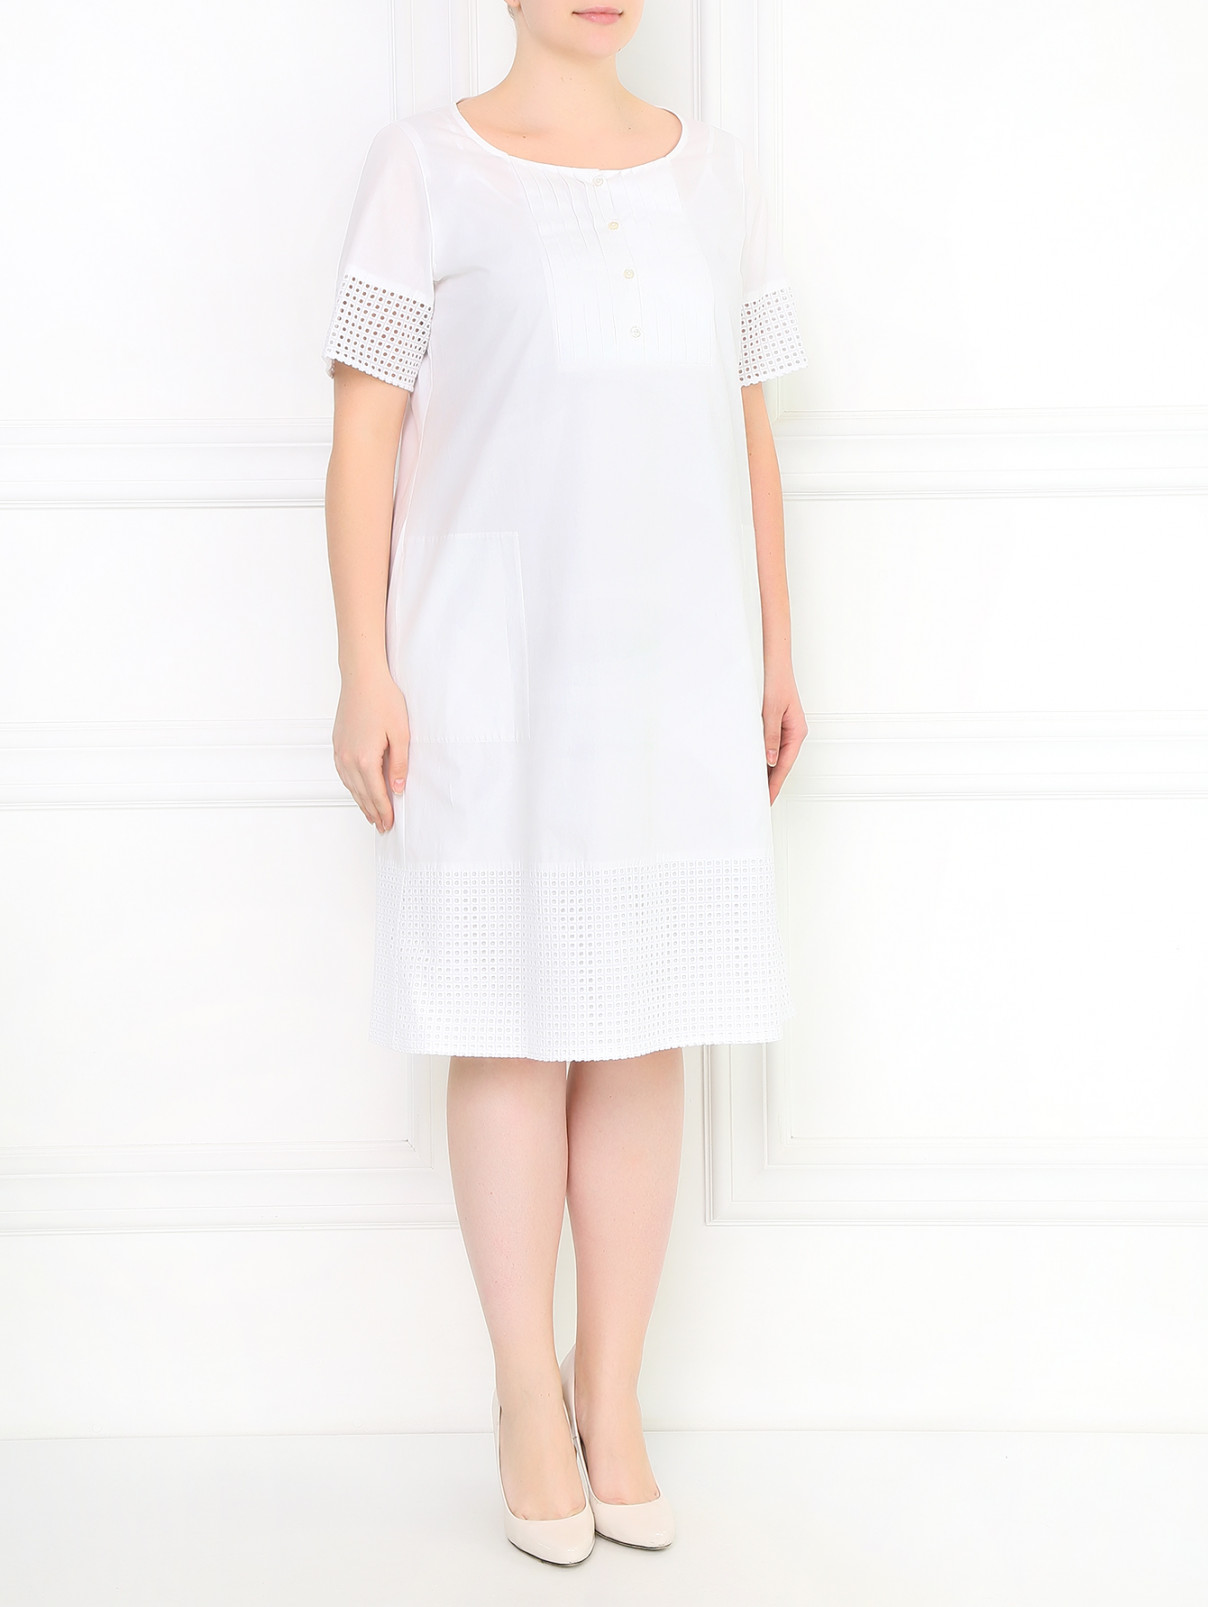 Платье из хлопка с вышивкой Marina Sport  –  Модель Общий вид  – Цвет:  Белый